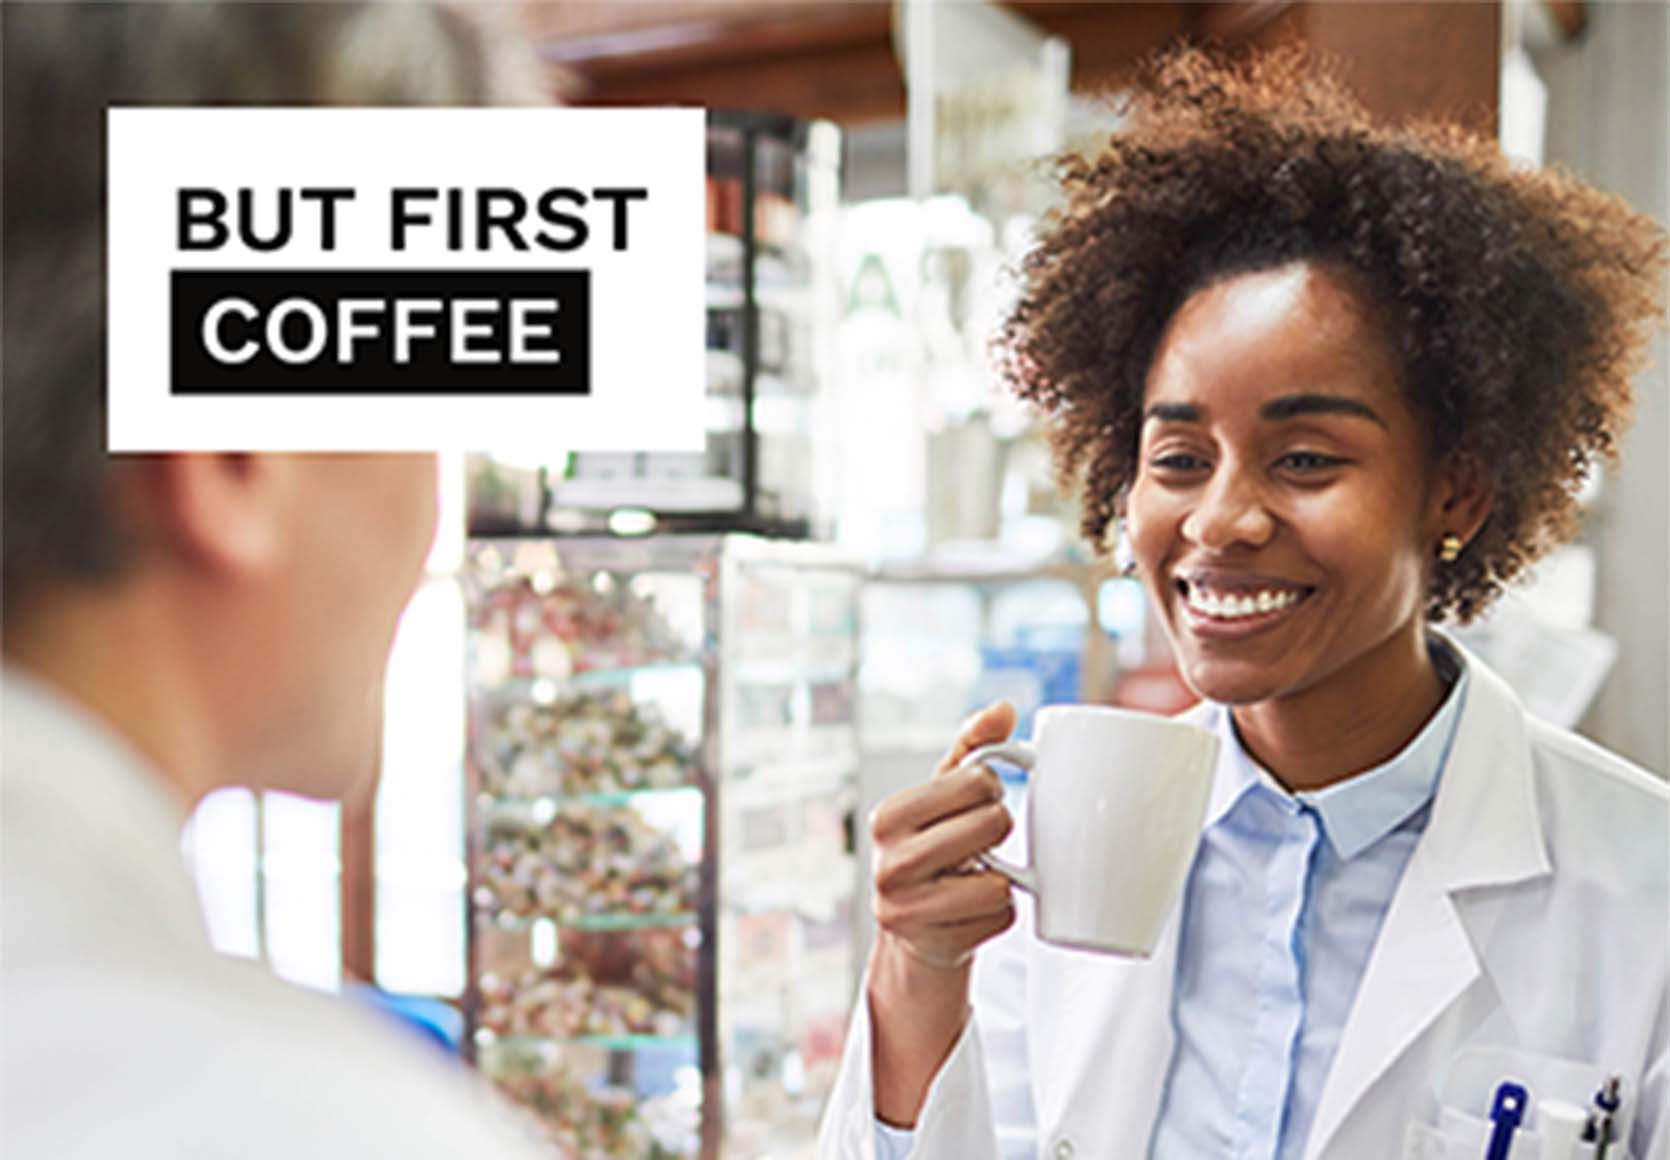 Apotheker geniet van kopje koffie dankzij de apotheekrobot